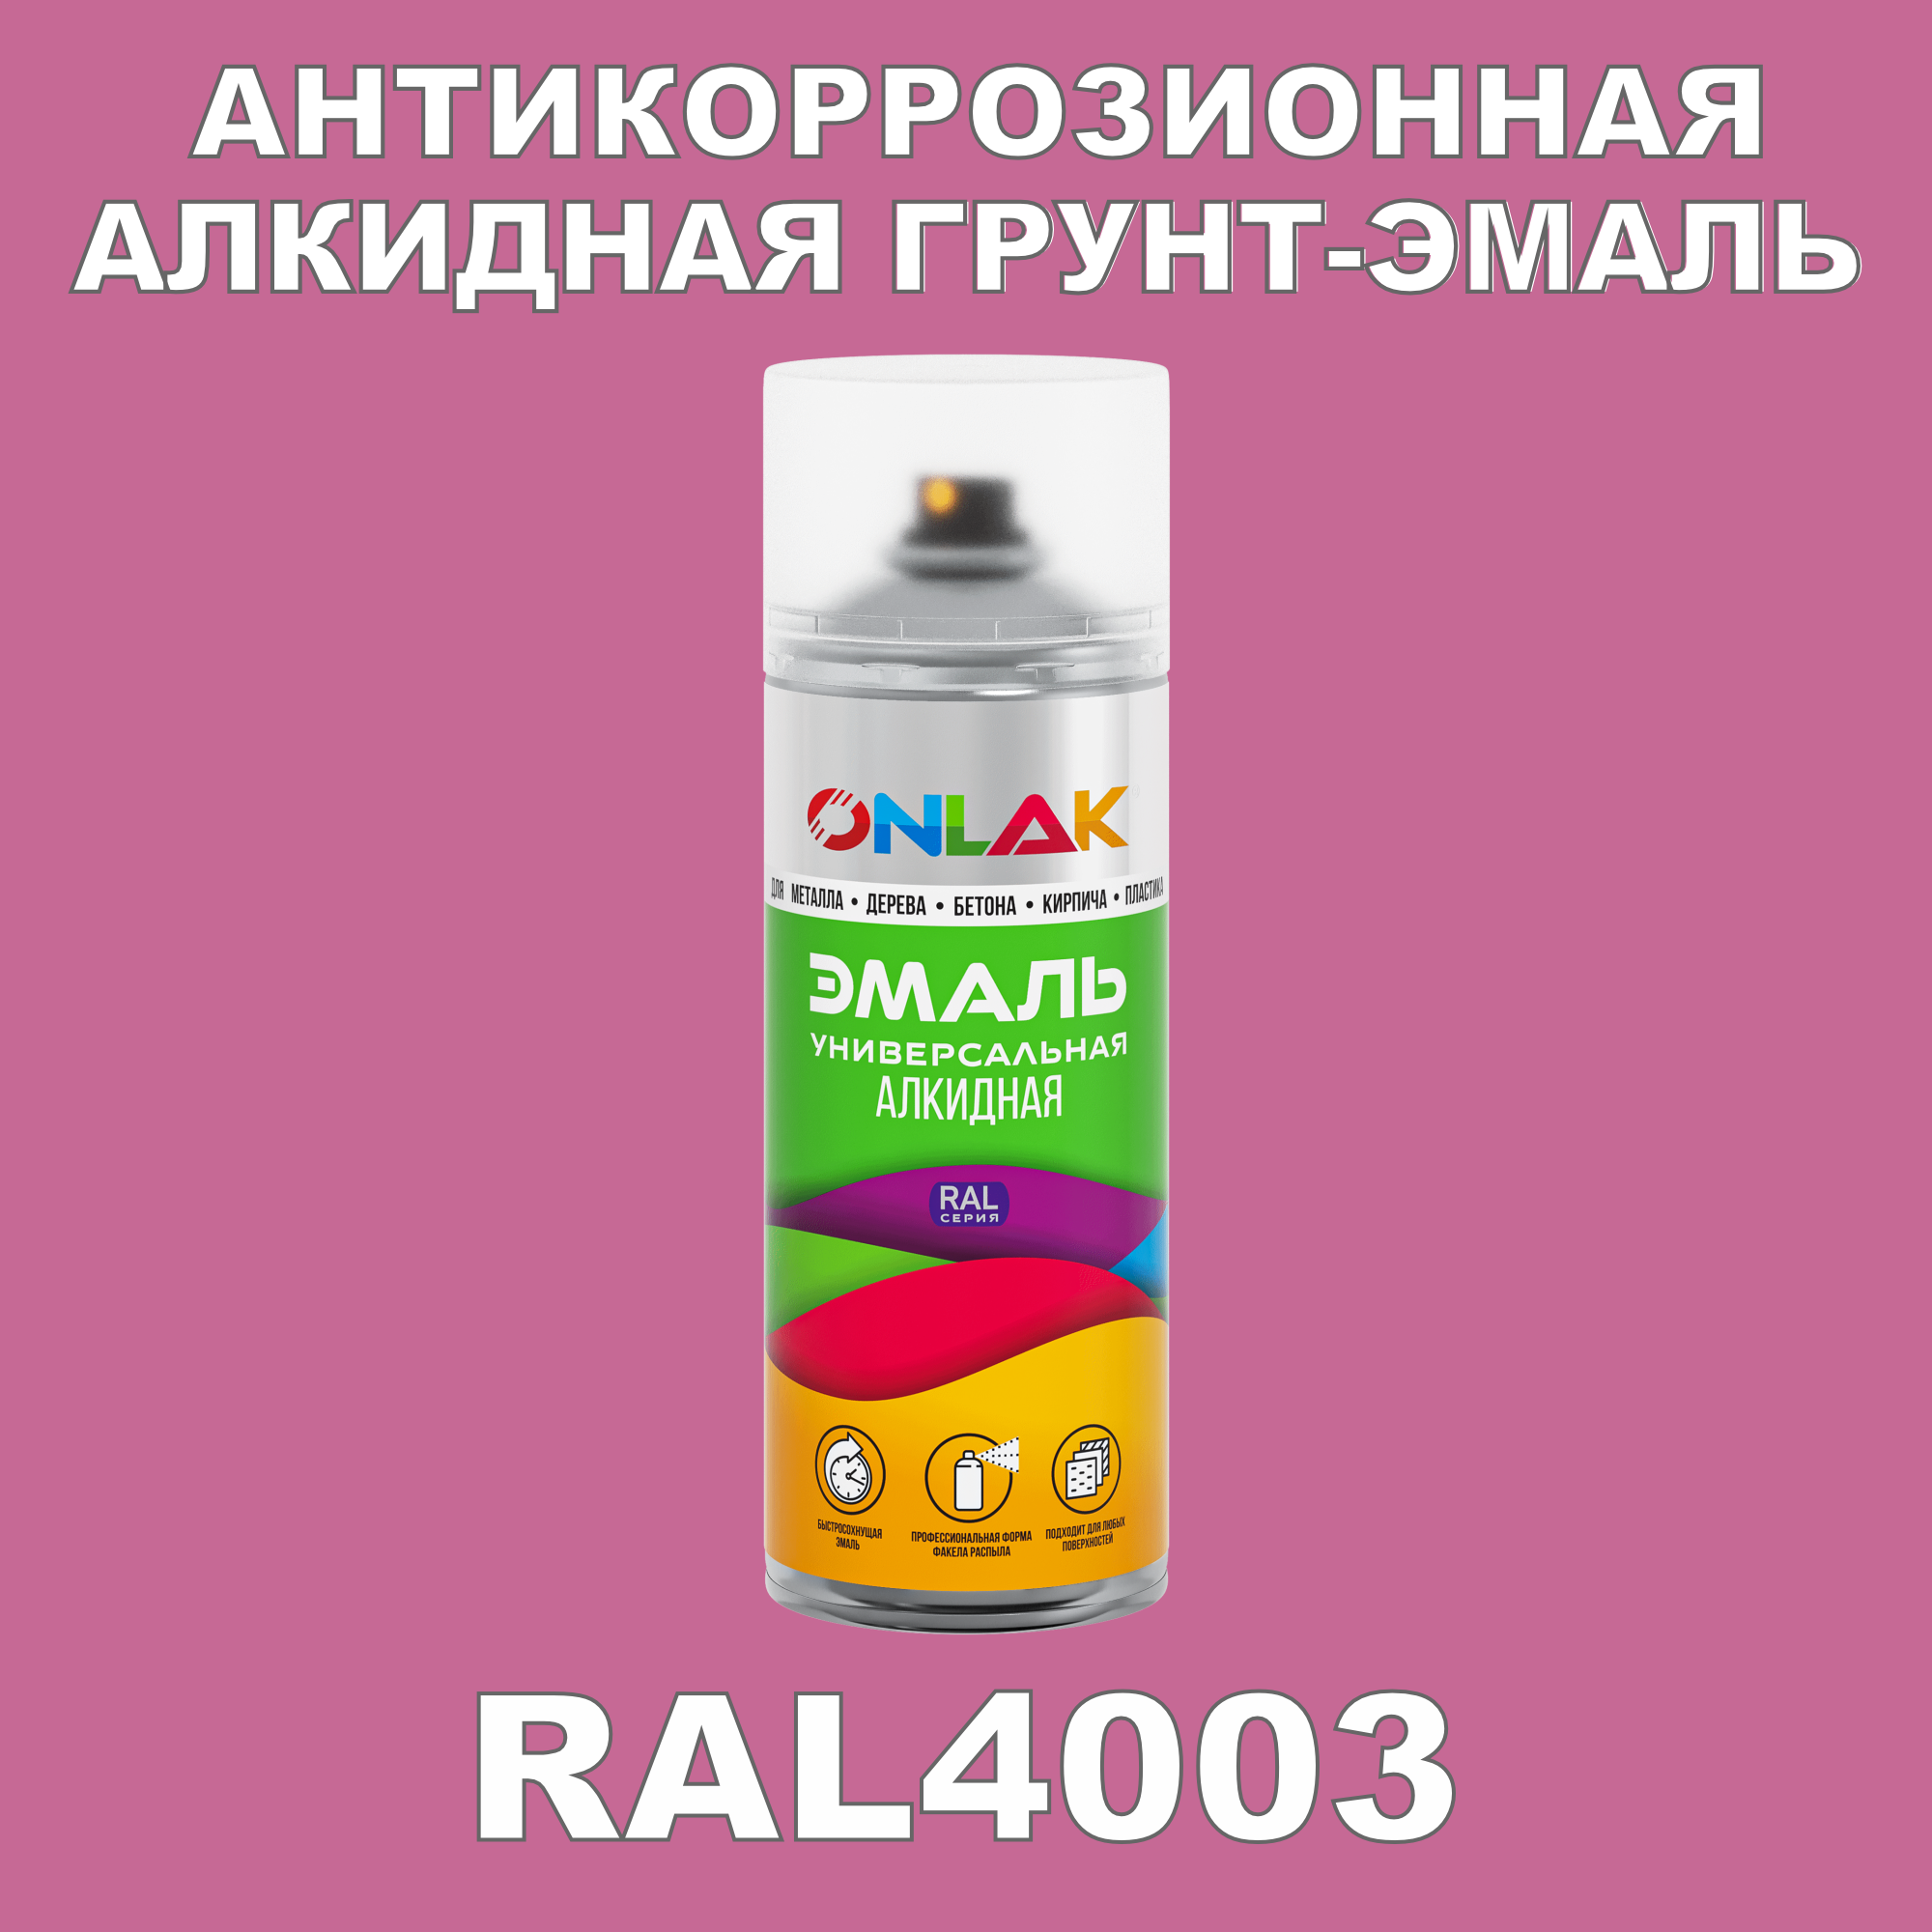 Антикоррозионная грунт-эмаль ONLAK RAL 4003,фиолетовый,542 мл